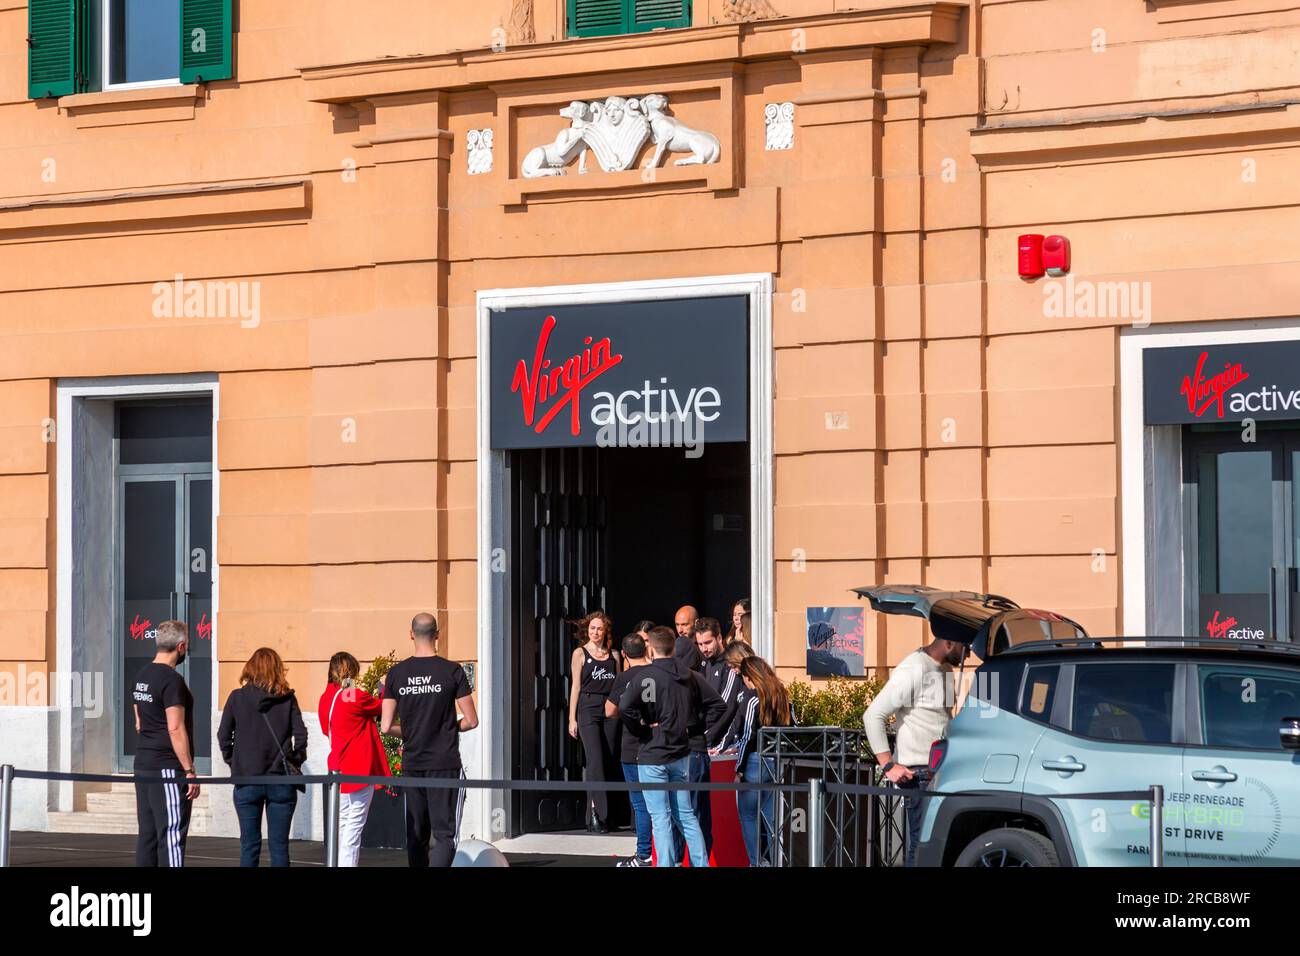 Napoli, Italia - 9 aprile 2022: Apertura della Vergine attiva a napoli, in via Nazario Sauro. Virgin Active è una società di club benessere con sede nel Regno Unito. Foto Stock